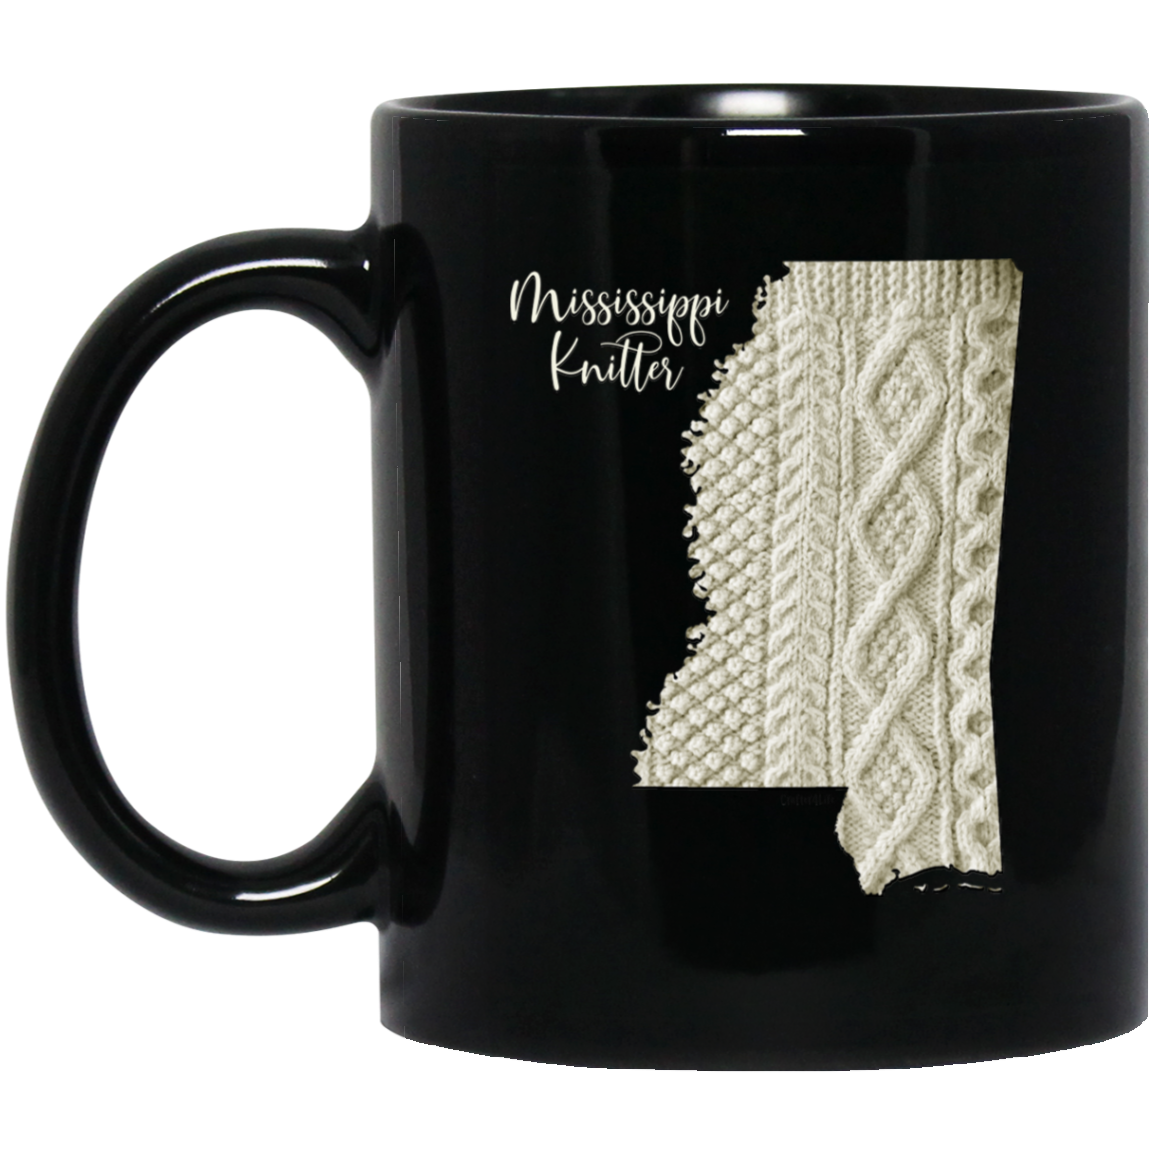 Mississippi Knitter Mugs